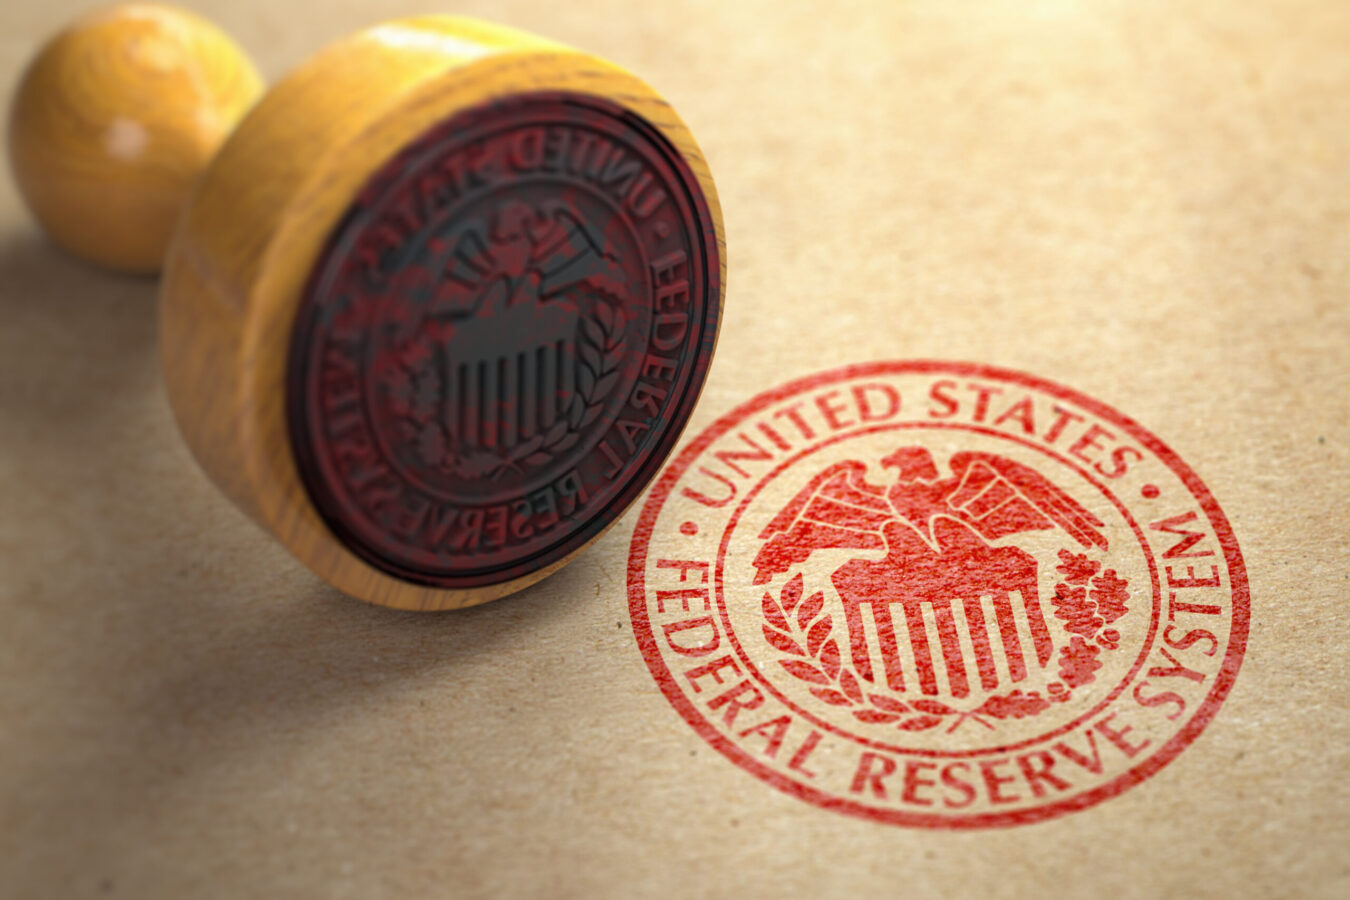 Federal Reserve System (FED) symbol stamp on craft paper; Fed